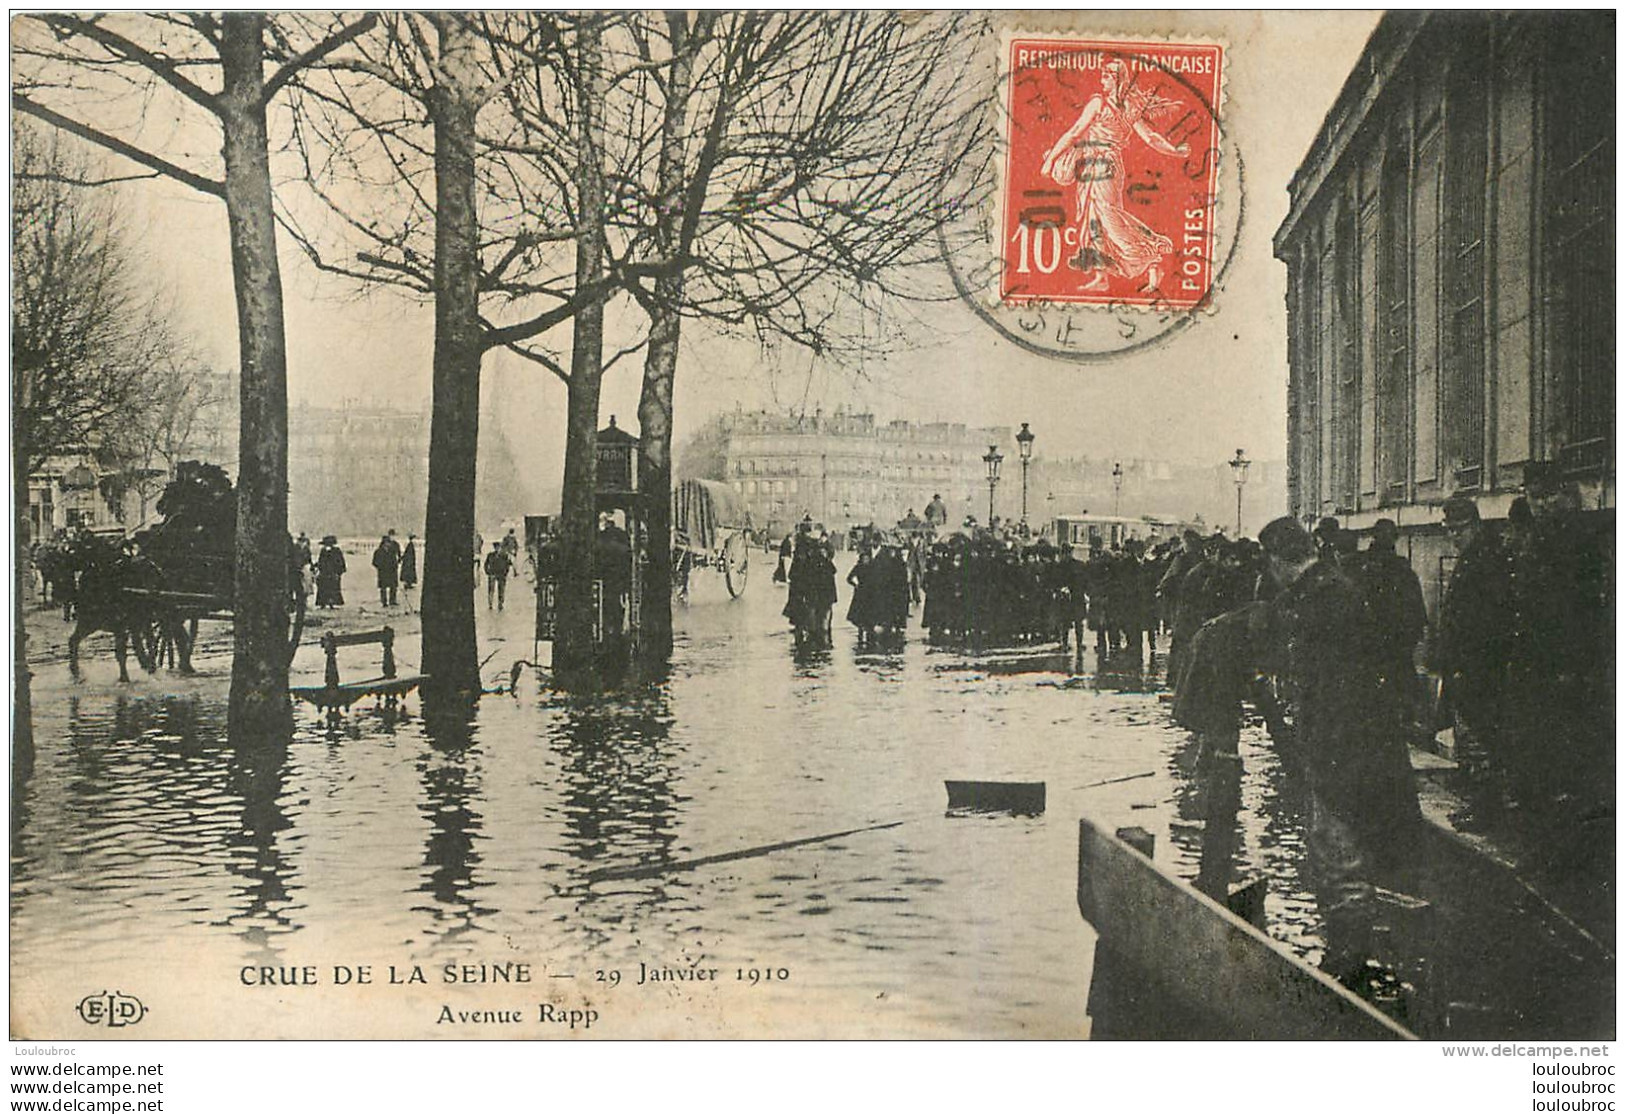 PARIS VII AVENUE RAPP CRUE DE LA SEINE JANVIER 1910 - District 07